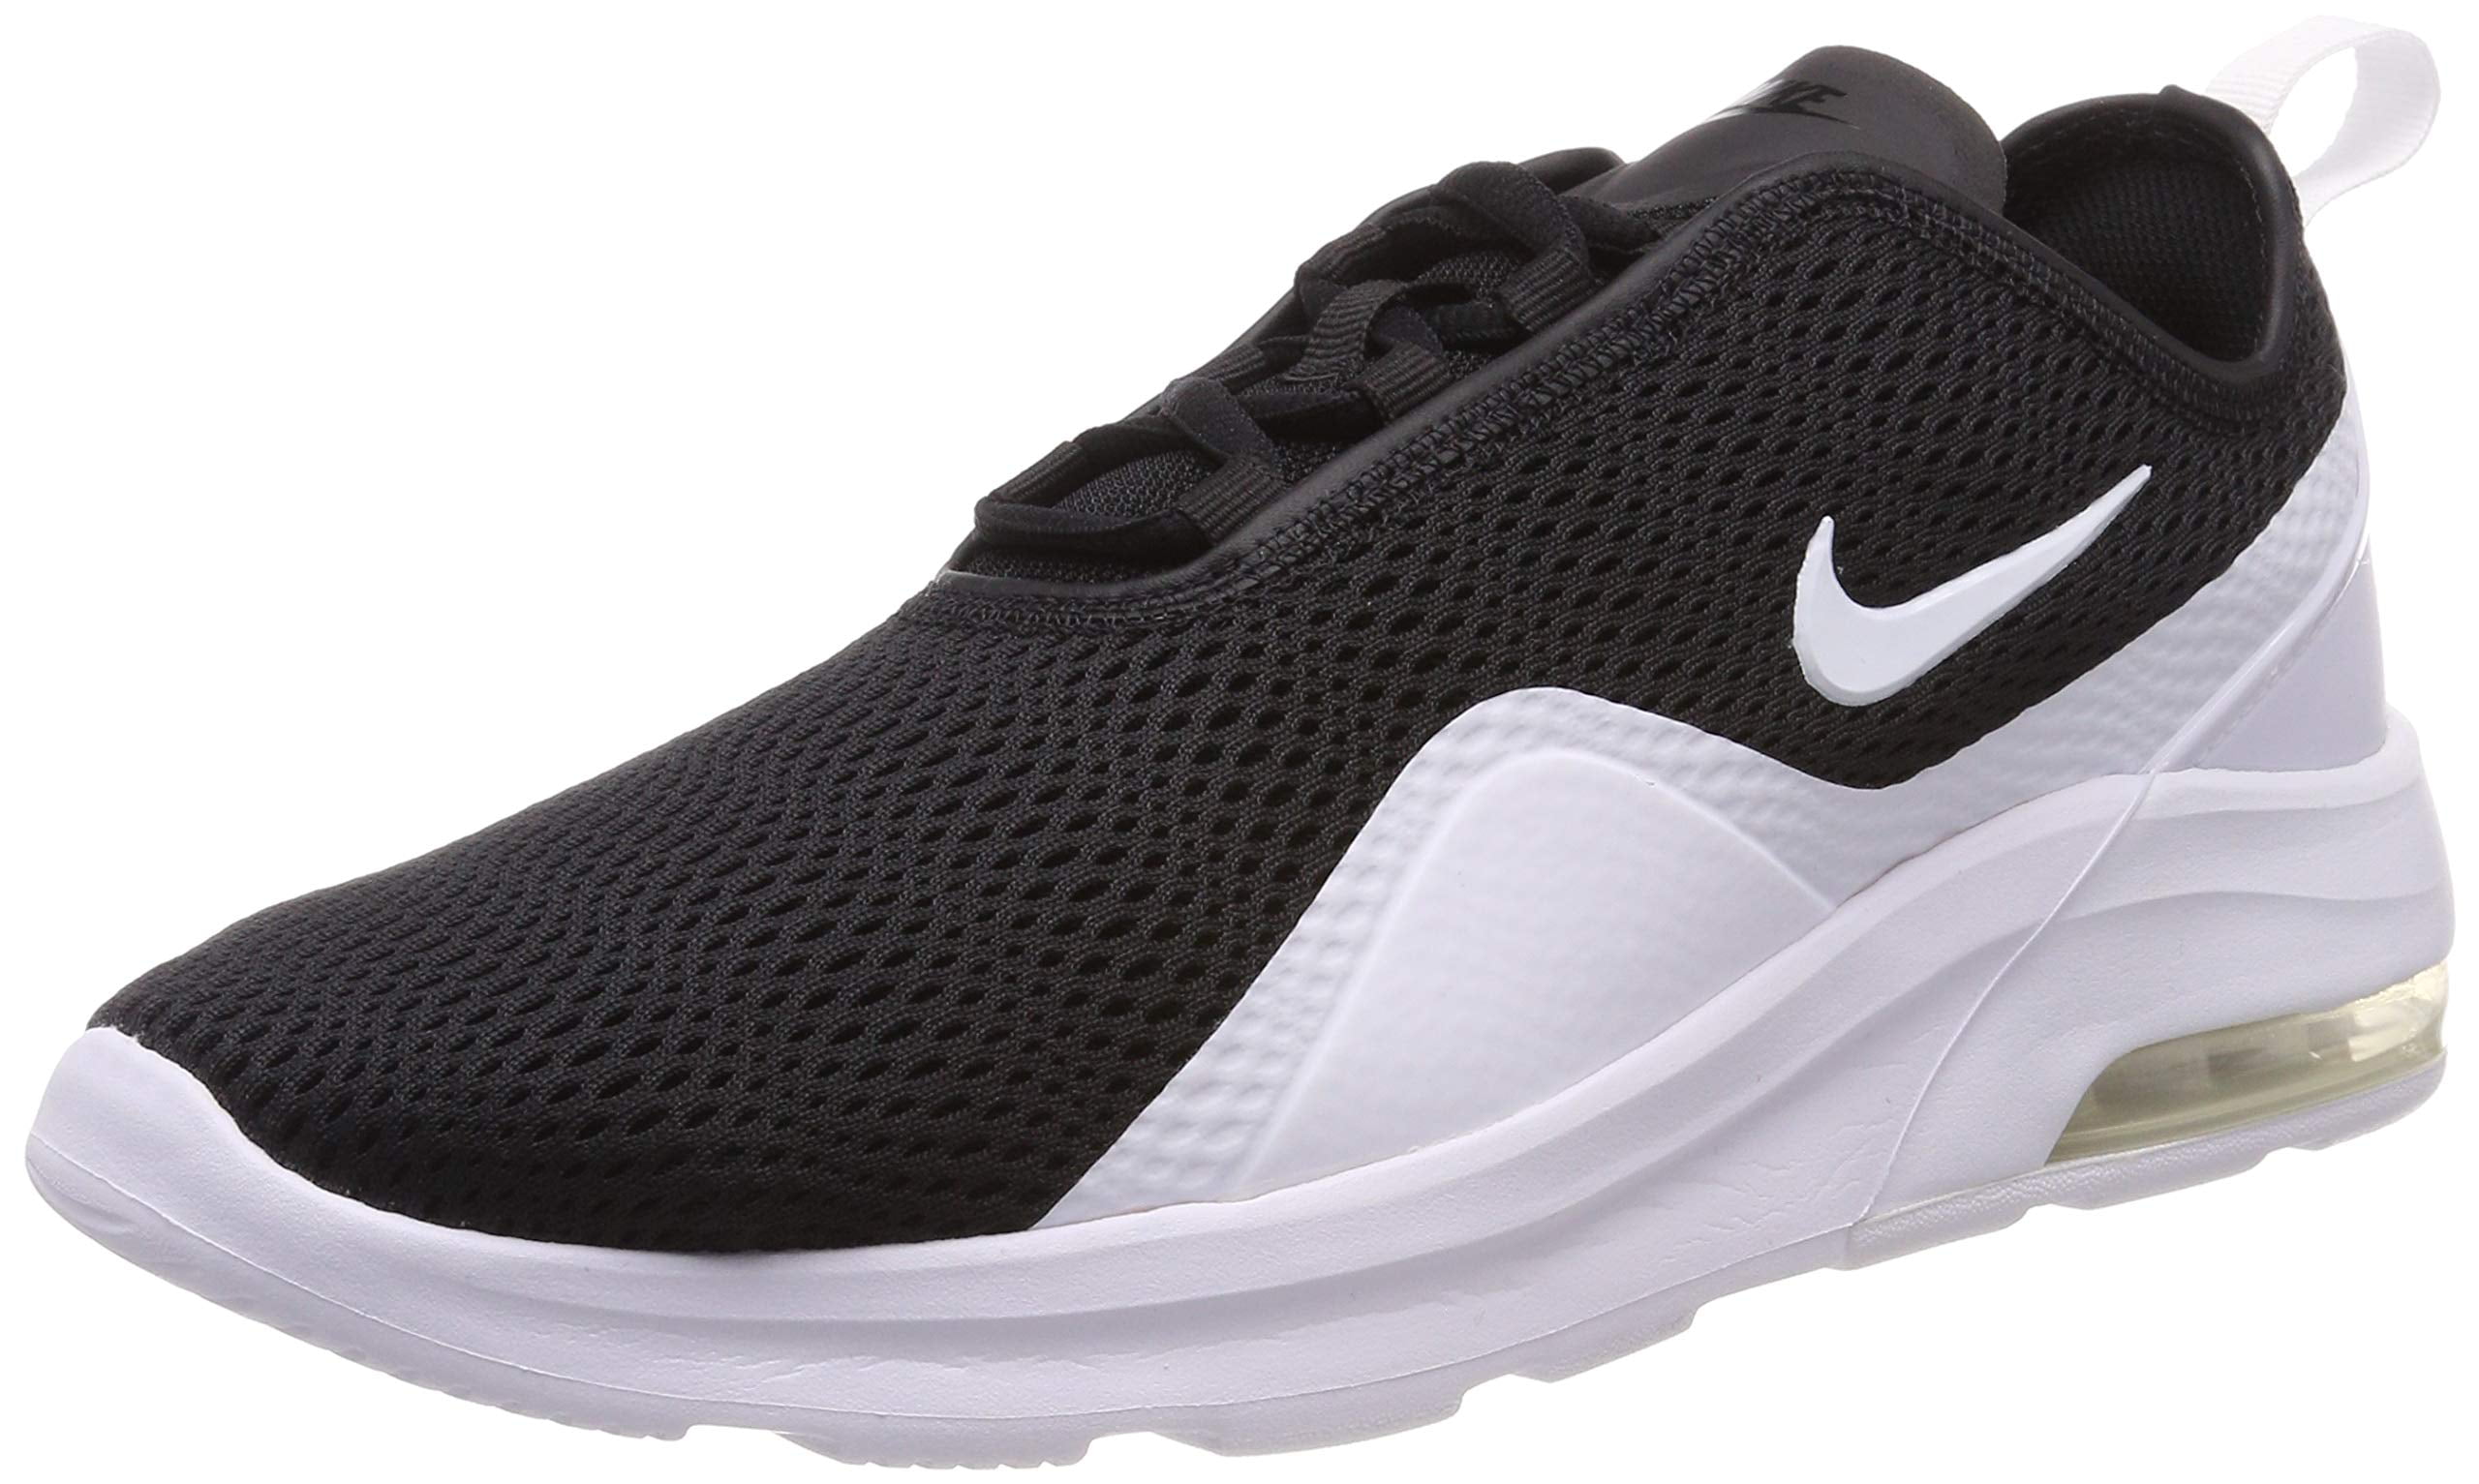 Sult realistisk vandring Nike AO0266-003; Men's Air Max Motion 2 Black/White Sneakers (9 D(M) US  Men) - Walmart.com